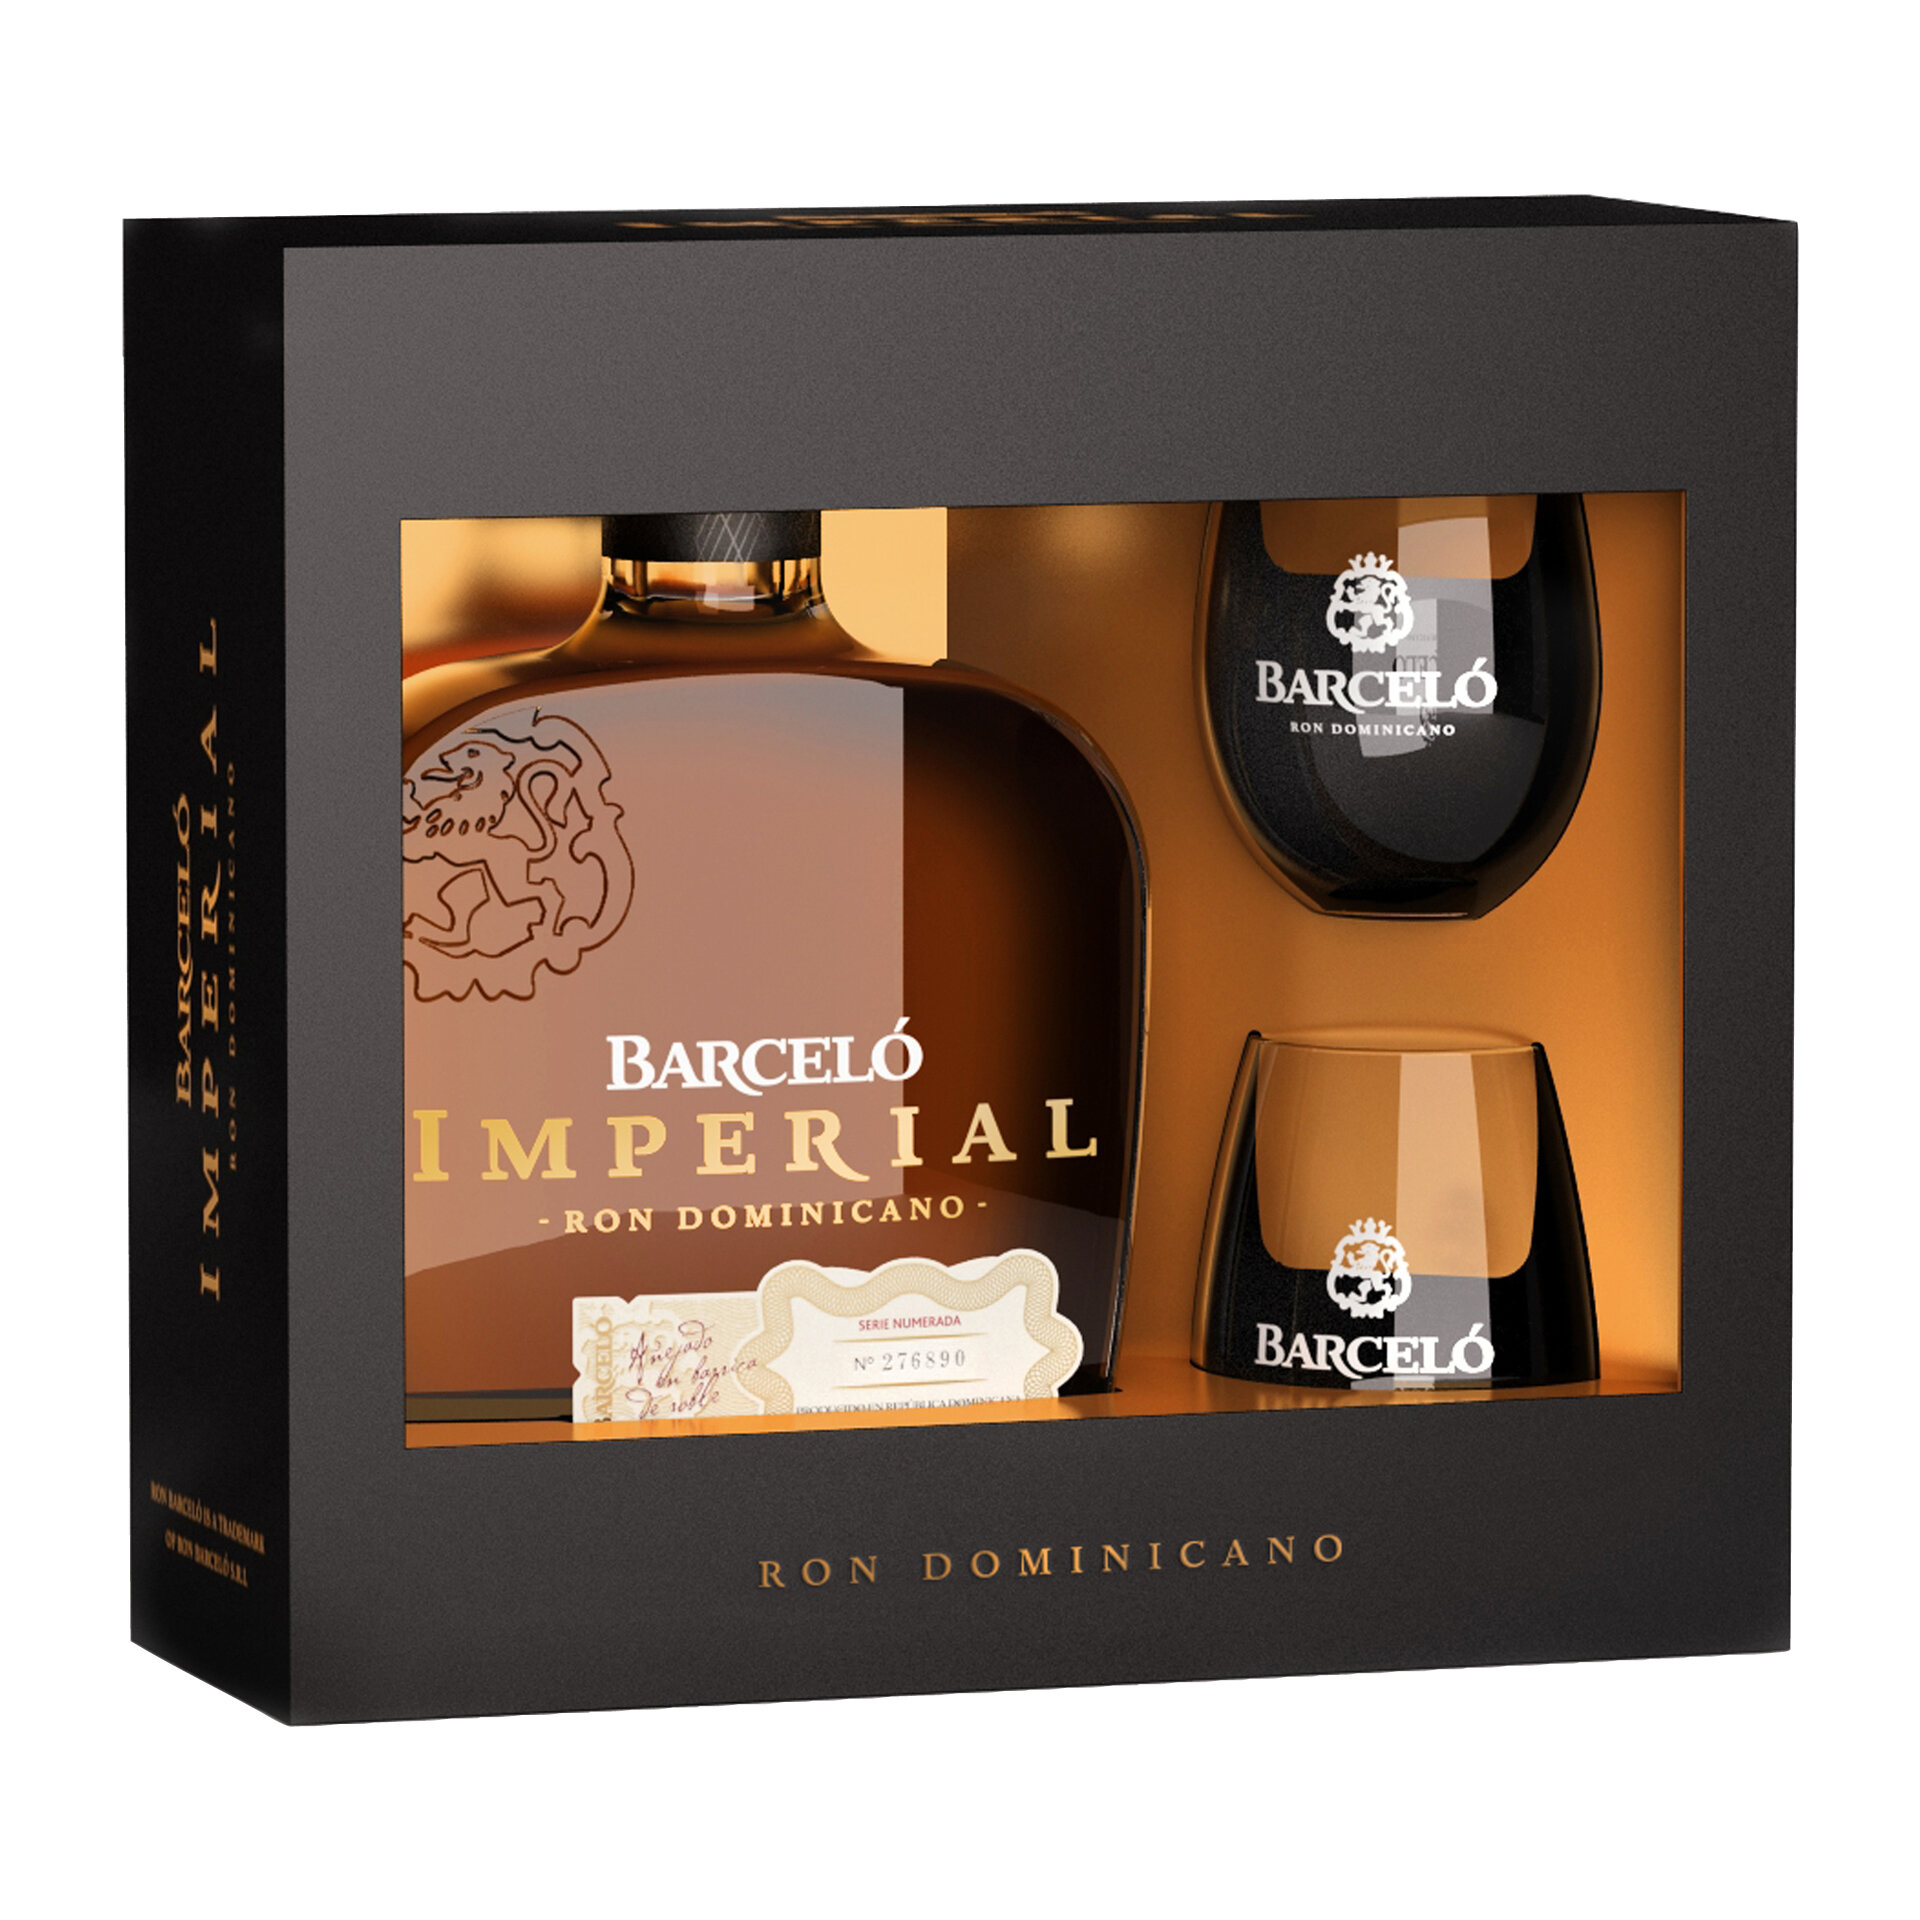 Barcelo imperial 0.7 цена. Ром Barcelo Imperial 0.7. Barcelo Imperial 0.7 в подарочной упаковке. Коньяк Барсело Империал. Ром Barcelo Imperial Onyx в подарочной упаковке.